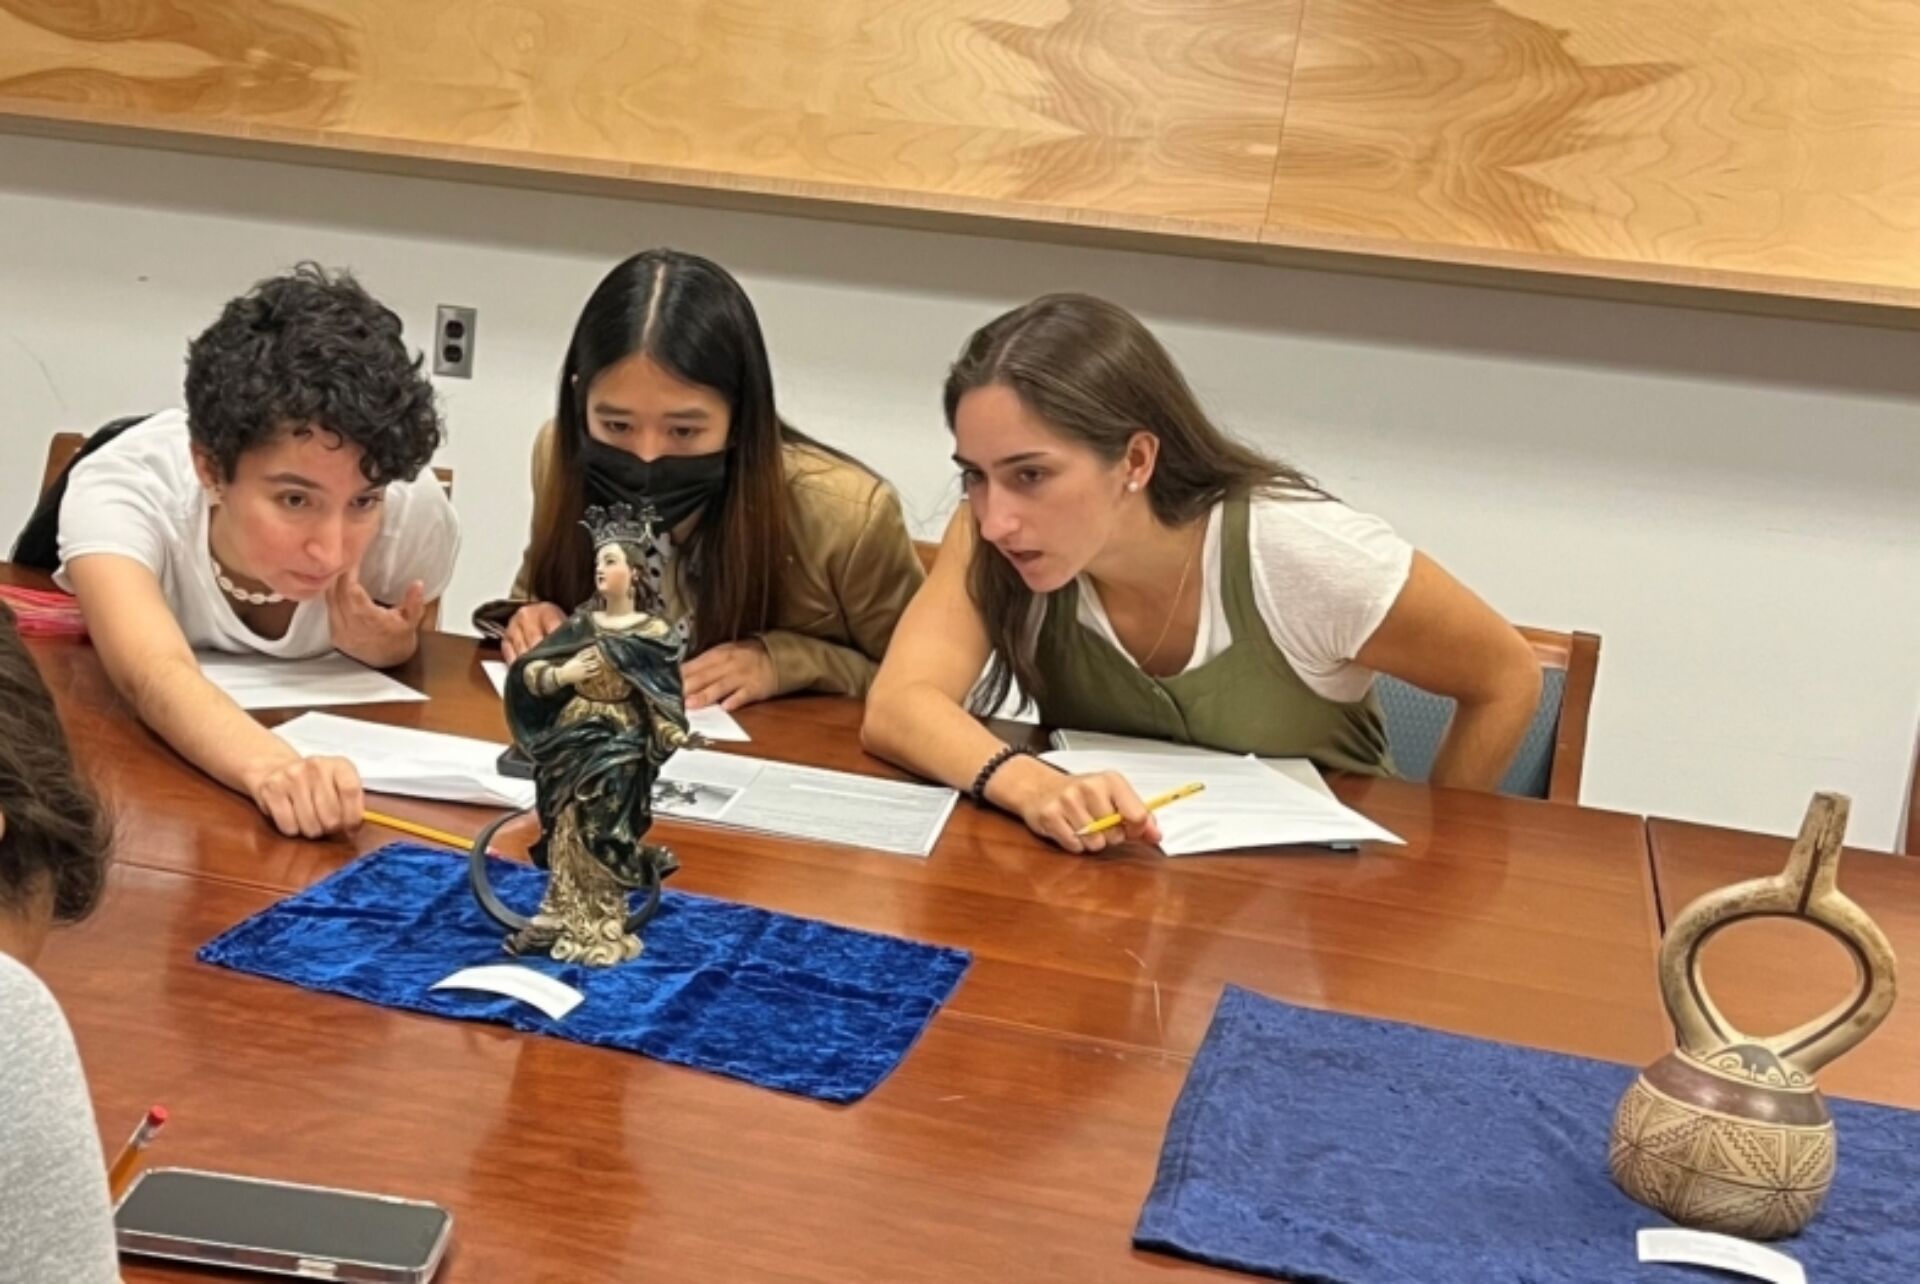 Art history students examine a sculpture.